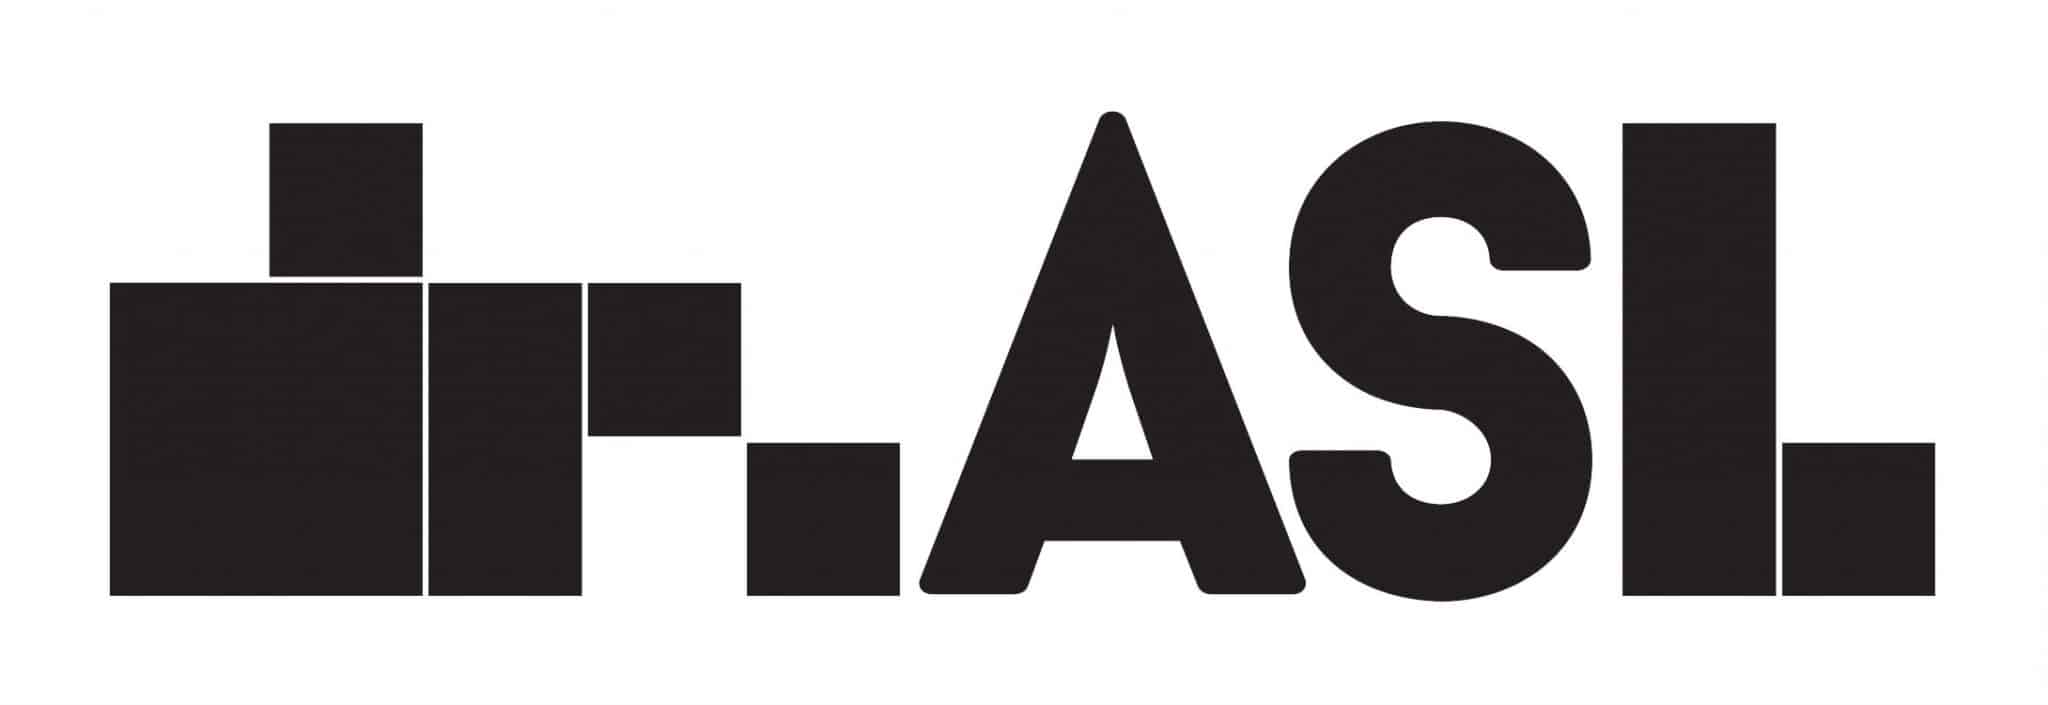 DRASL DJ logo - official